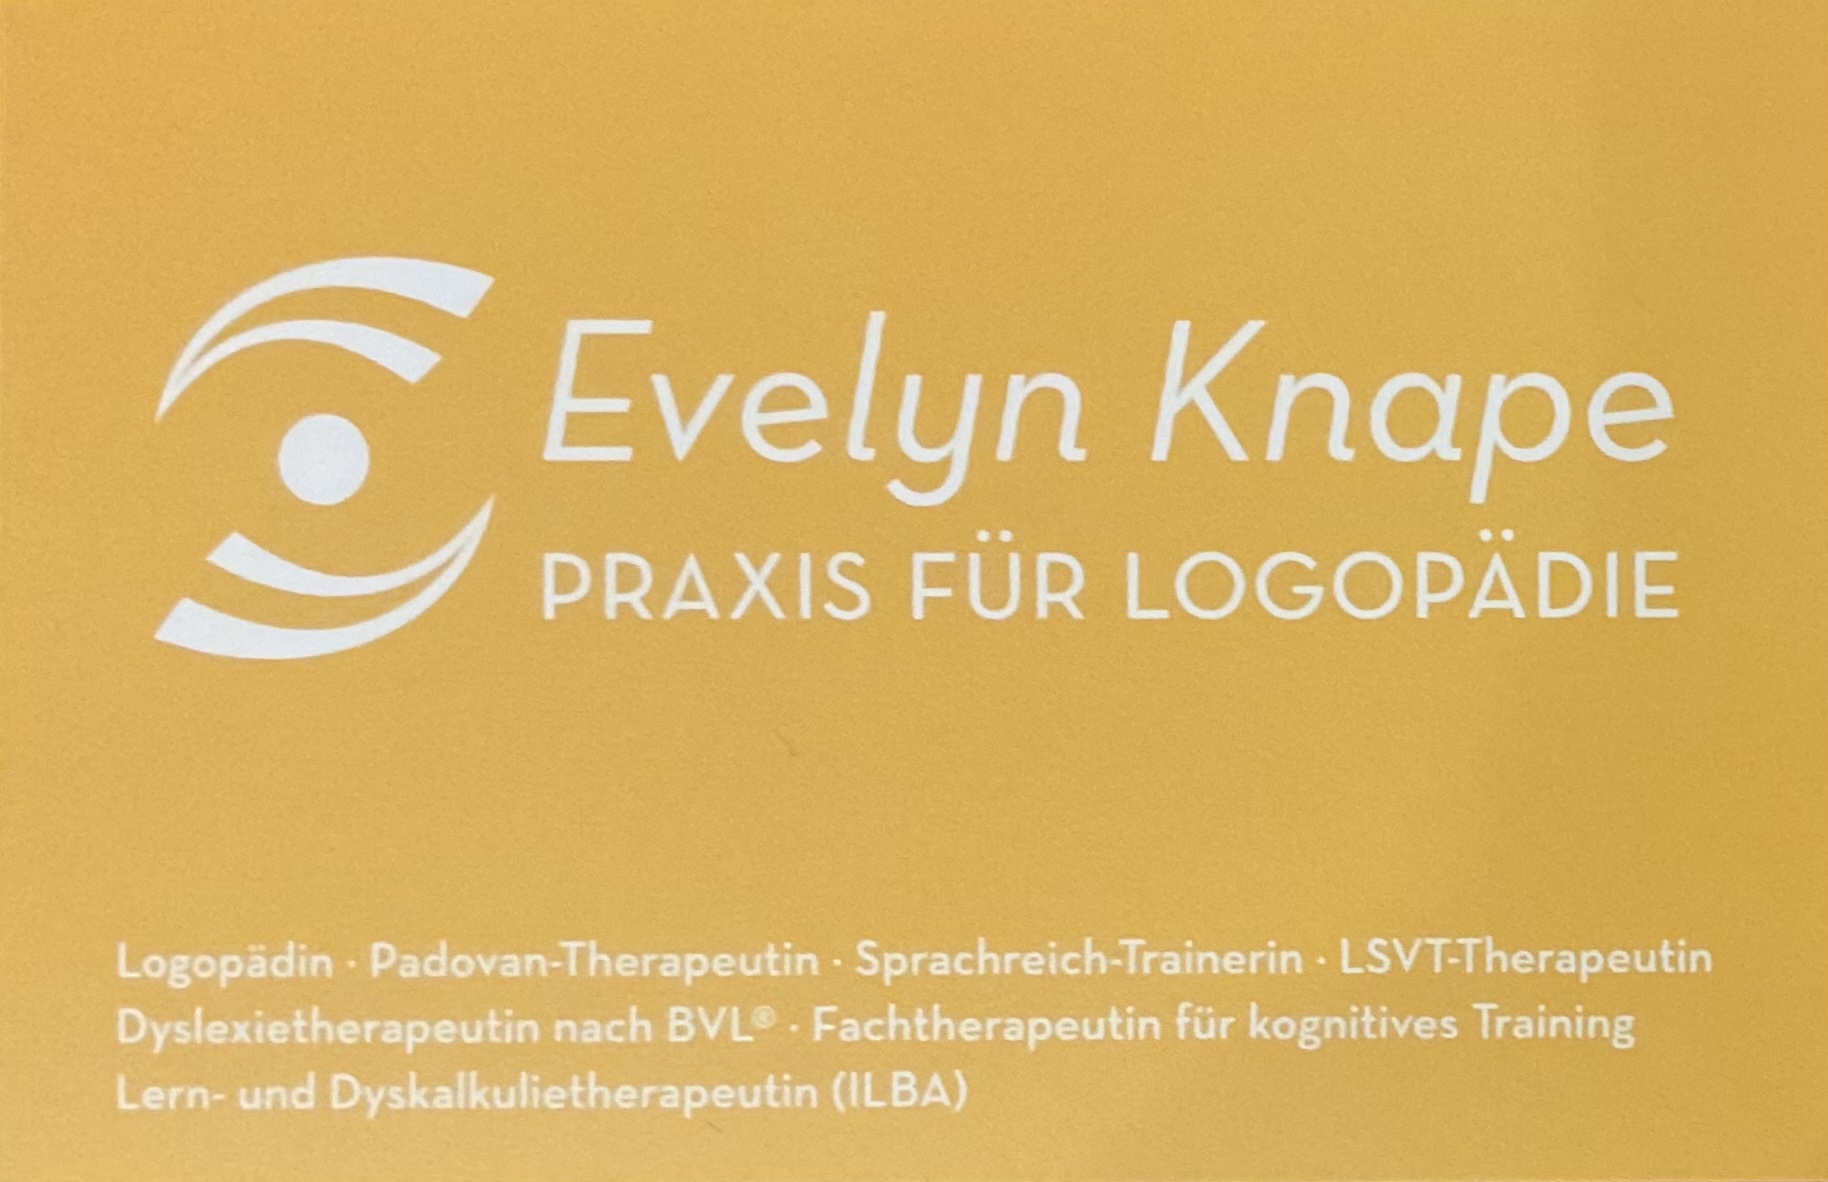 Praxis für Logopädie Evelyn Knape